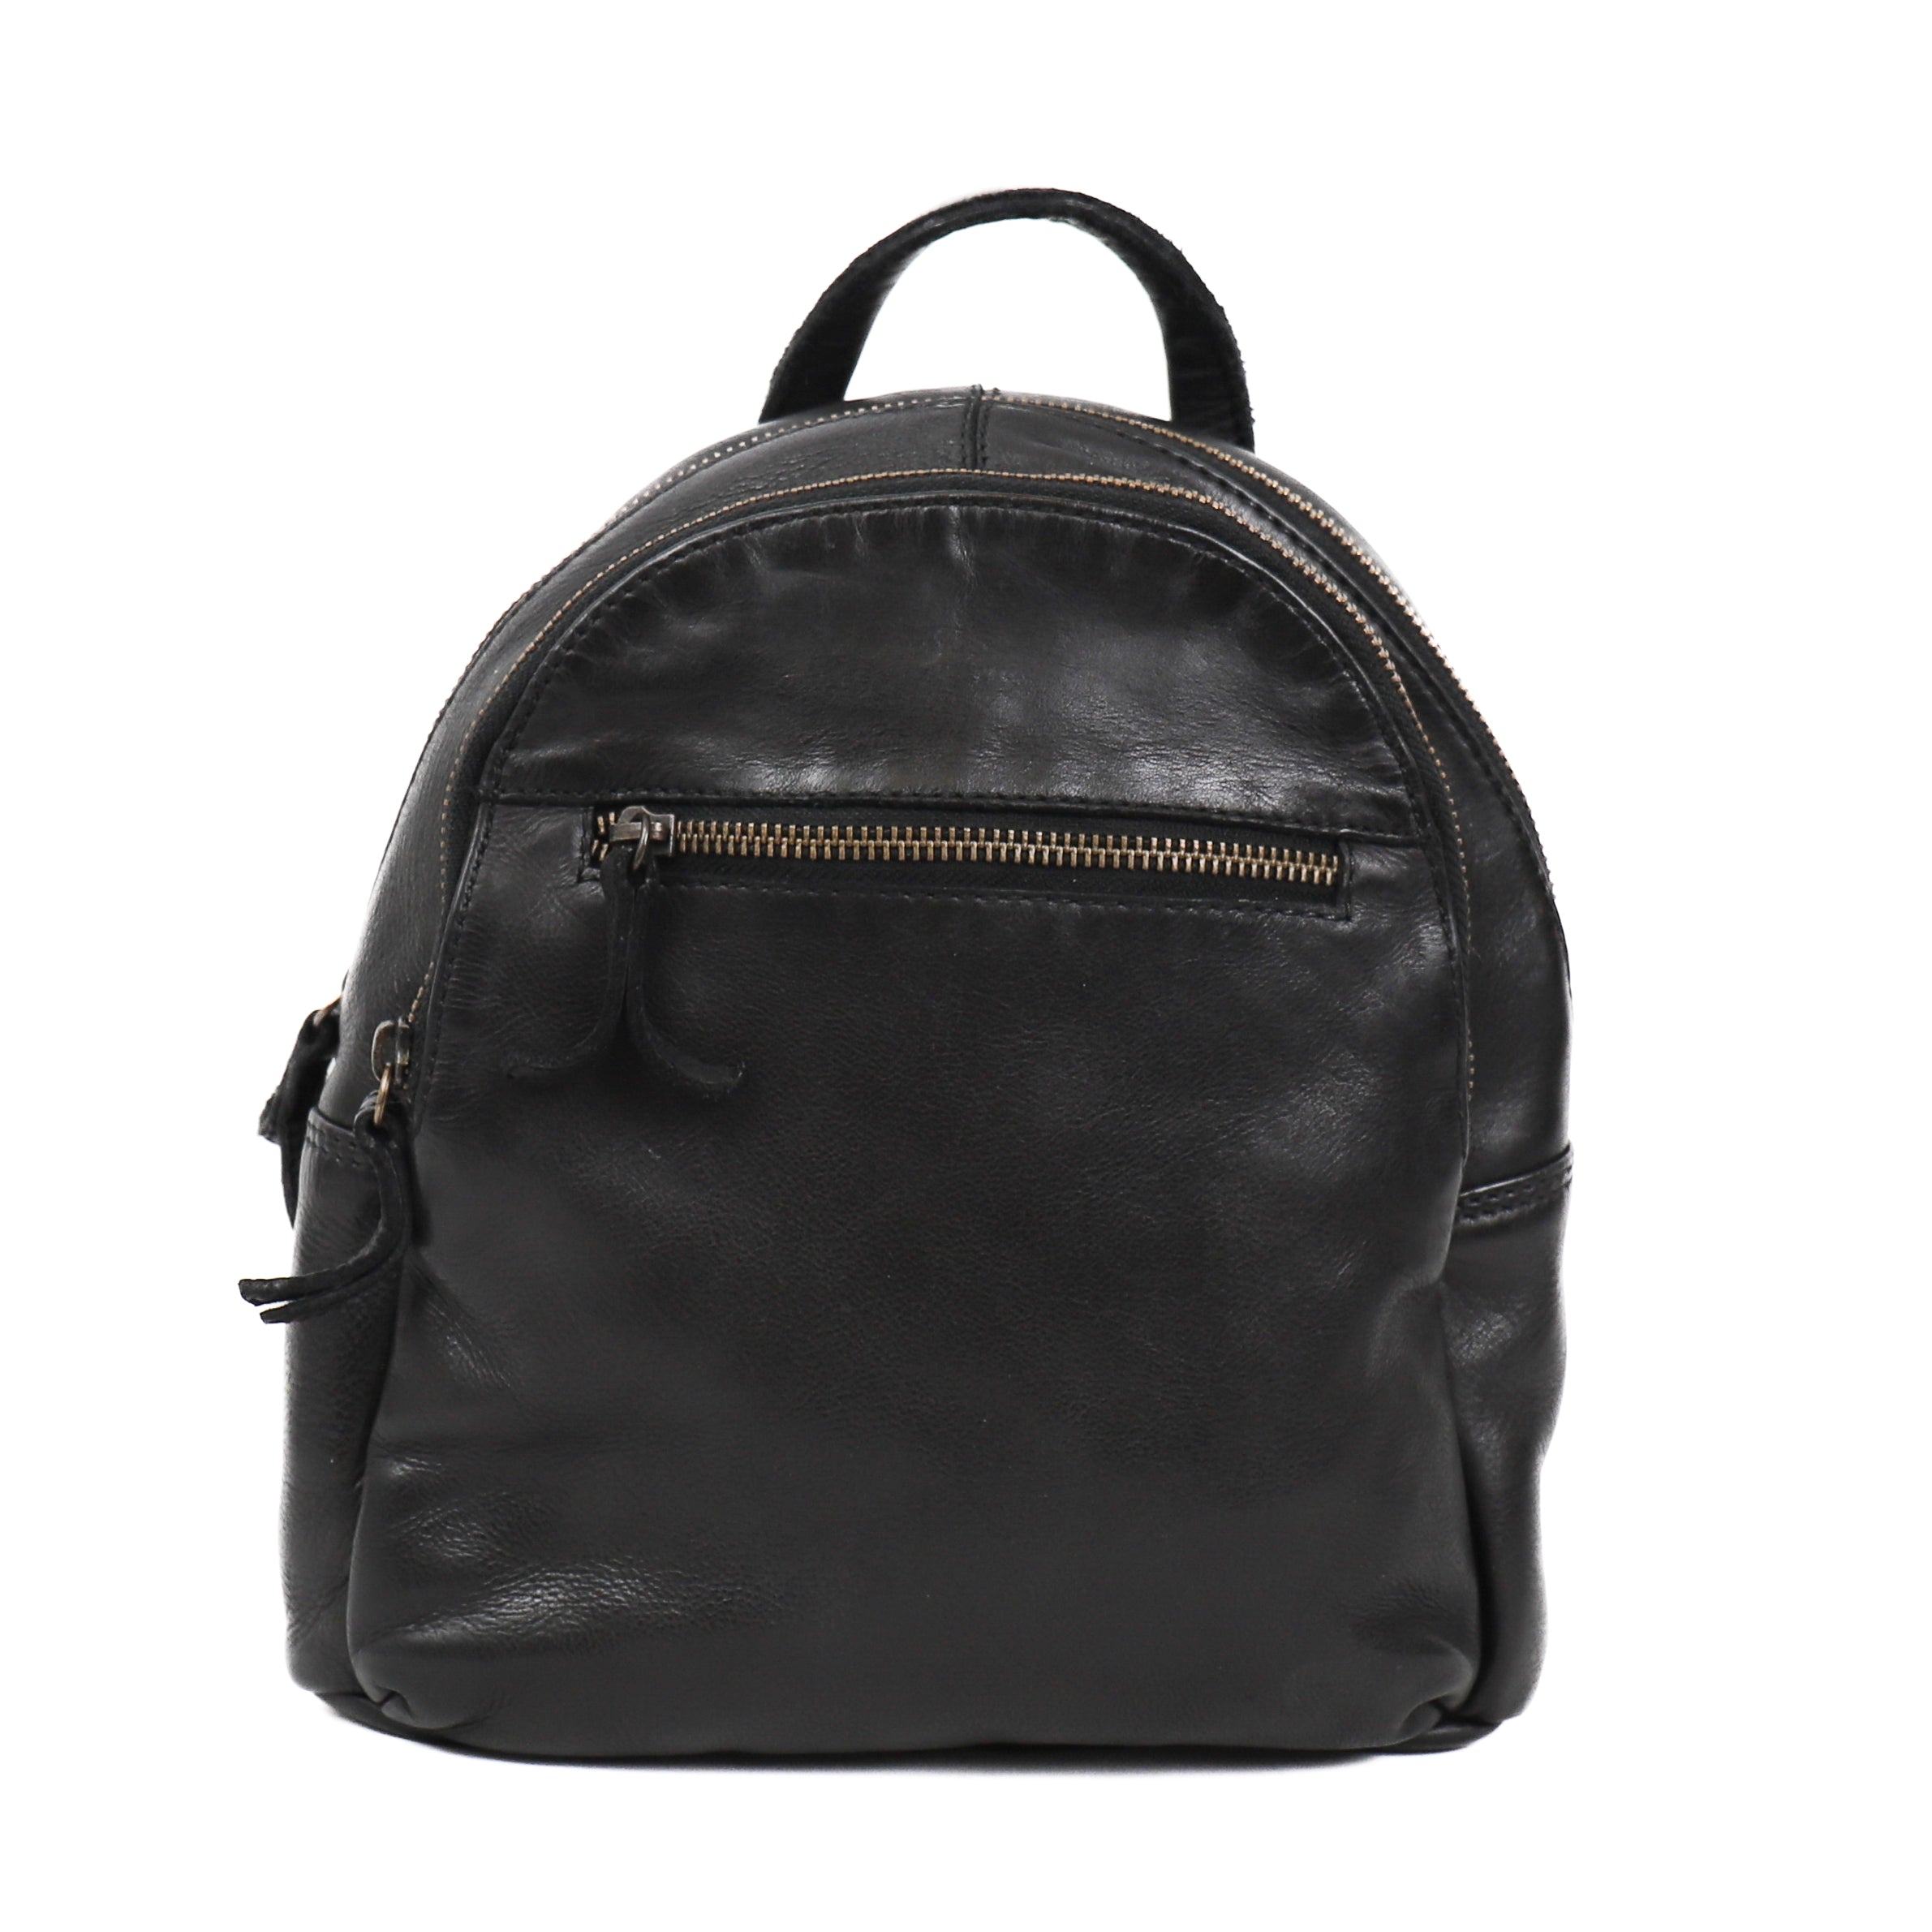 Backpack 'Kim' black